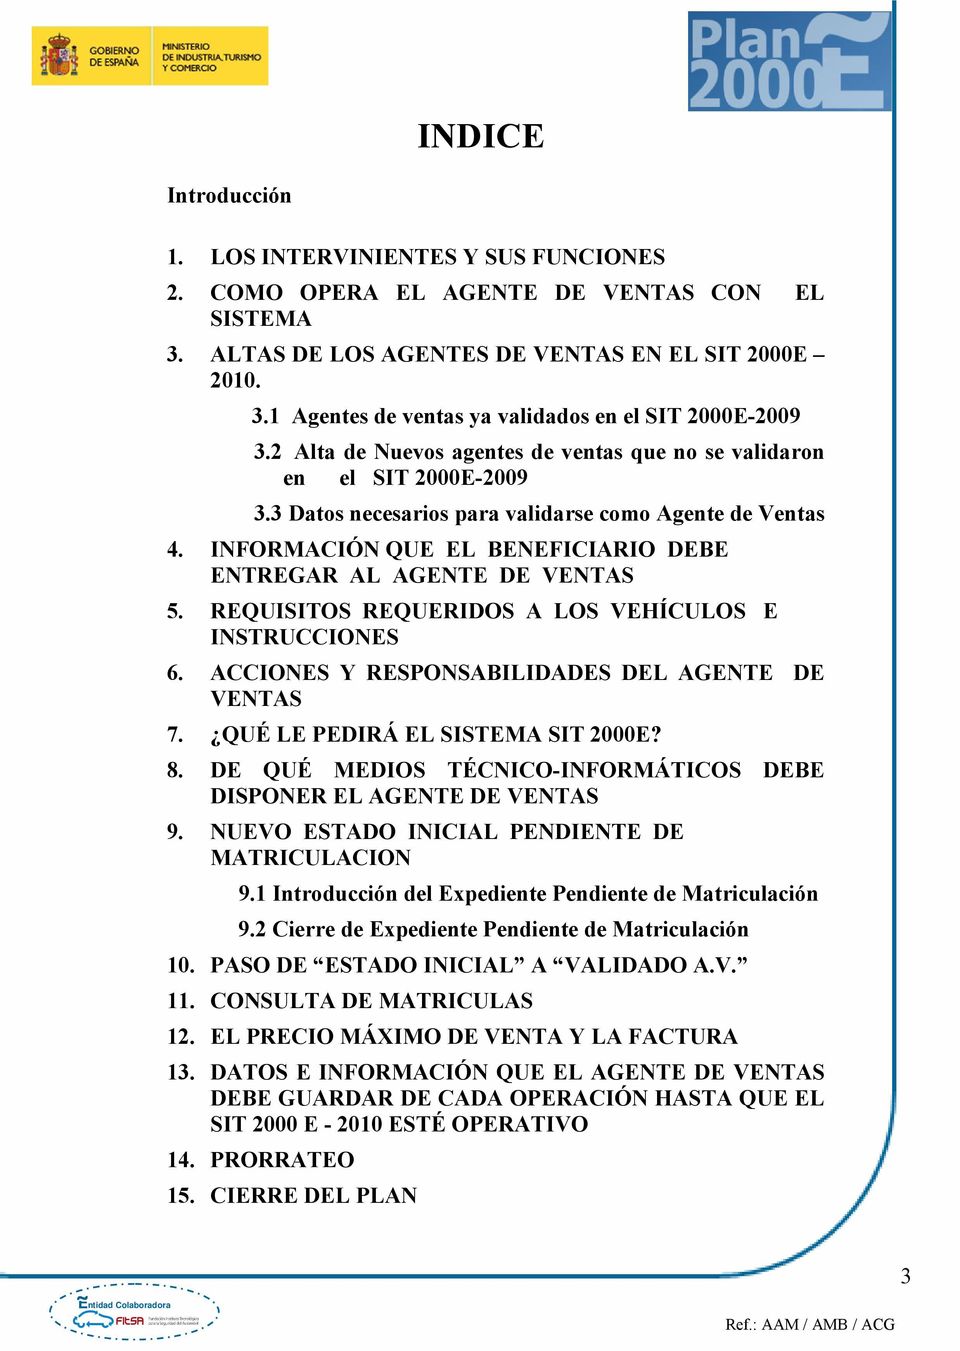 INFORMACIÓN QUE EL BENEFICIARIO DEBE ENTREGAR AL AGENTE DE VENTAS 5. REQUISITOS REQUERIDOS A LOS VEHÍCULOS E INSTRUCCIONES 6. ACCIONES Y RESPONSABILIDADES DEL AGENTE DE VENTAS 7.